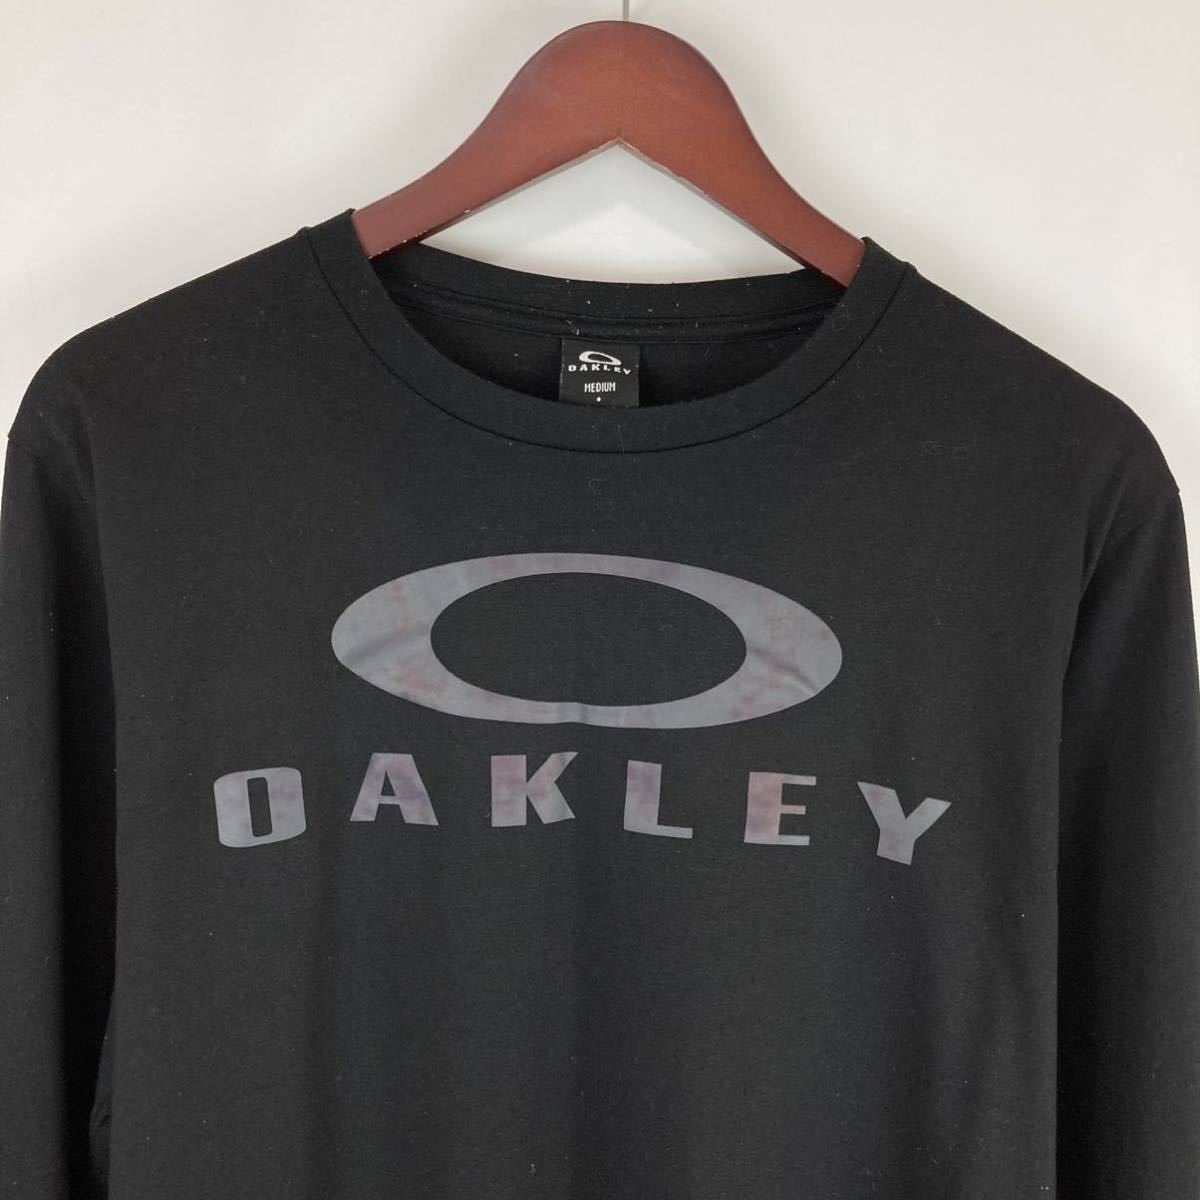 OAKLEY Oacley . вода скорость . мужской длинный рукав tops cut and sewn Logo принт одноцветный черный чёрный цвет M размер спорт уличный функция материалы 